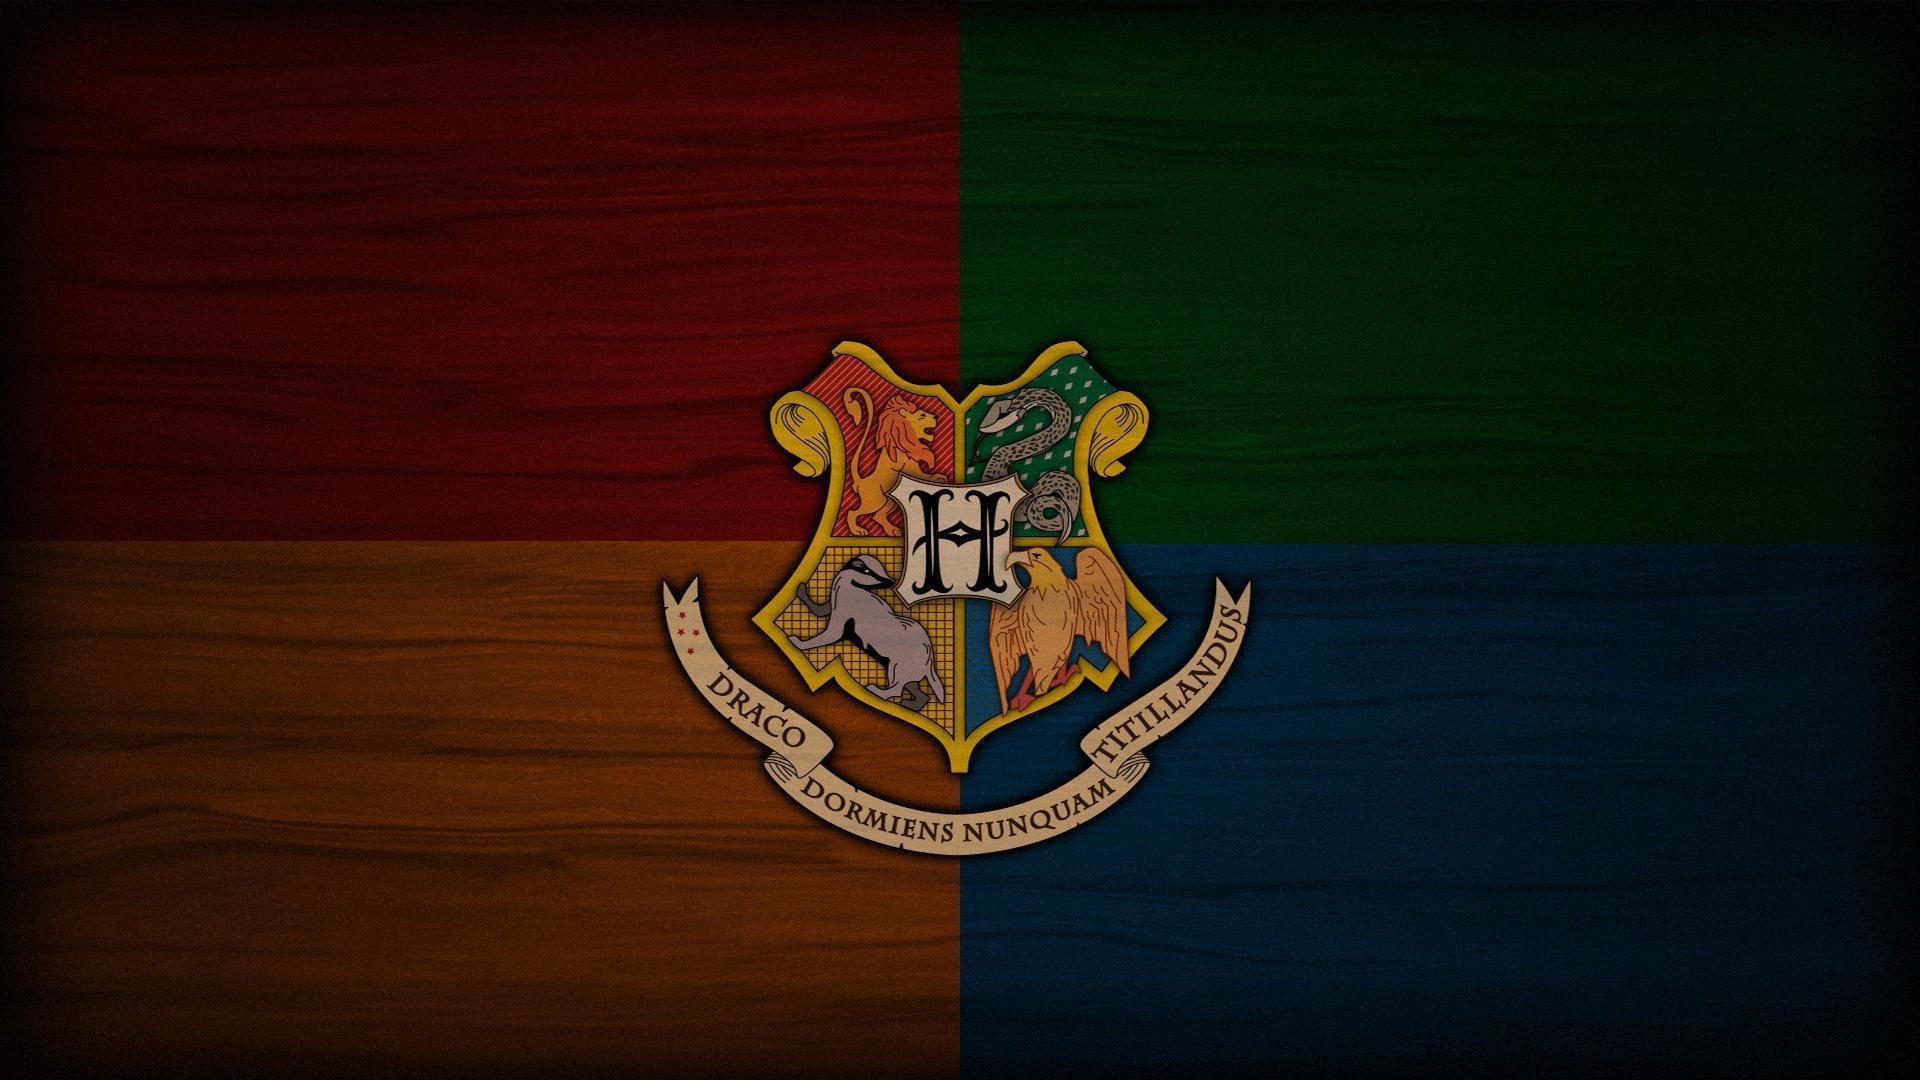 A Hogwarts Wallpaper I Put Together - Harry Potter Wallpaper Gryffindor Hd - HD Wallpaper 